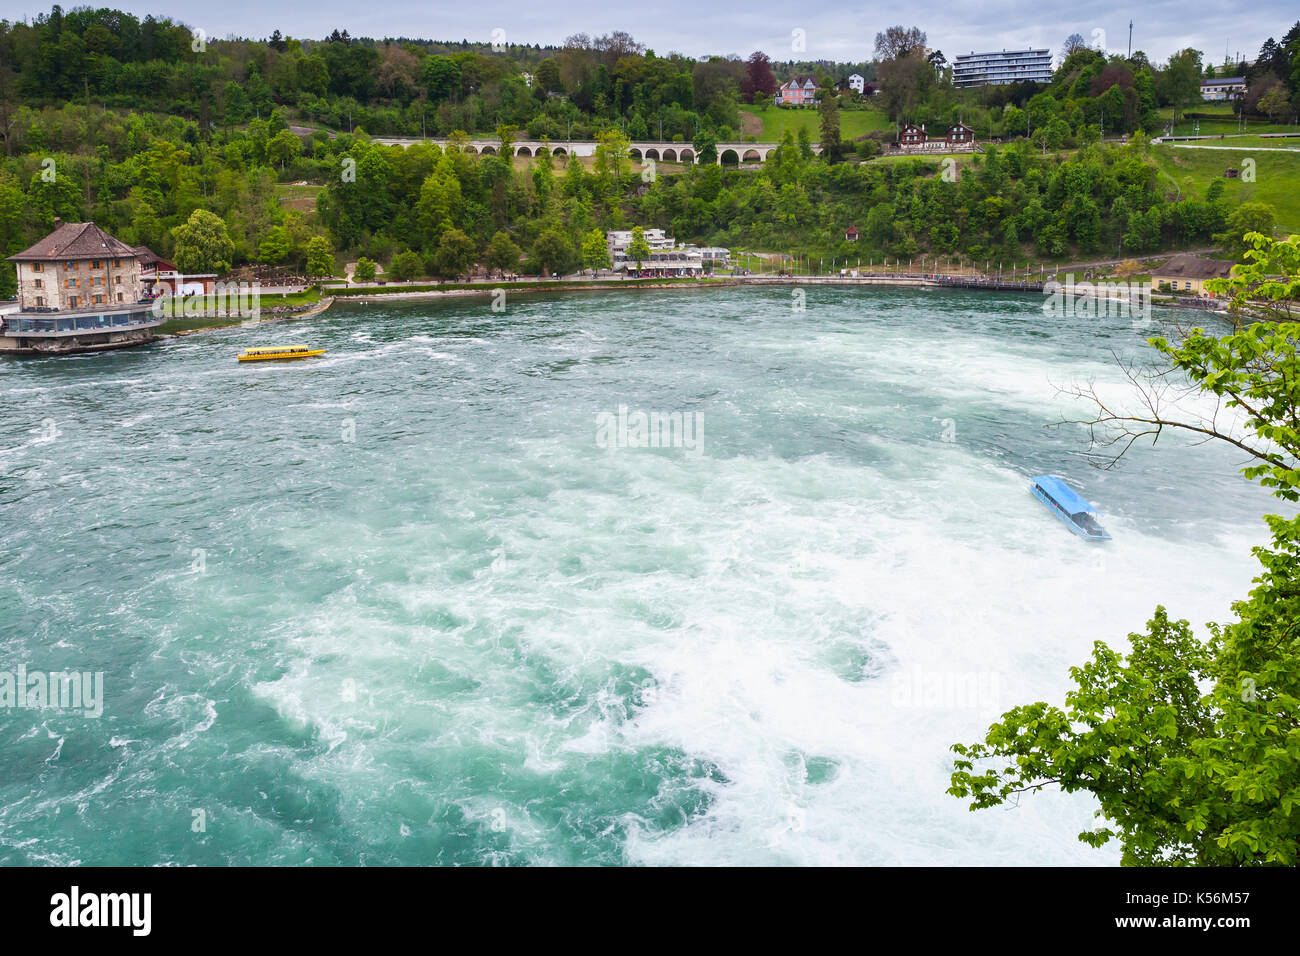 Der Rheinfall Landschaft. Touristischen Boote im schnellen Fluss Wasser Stockfoto